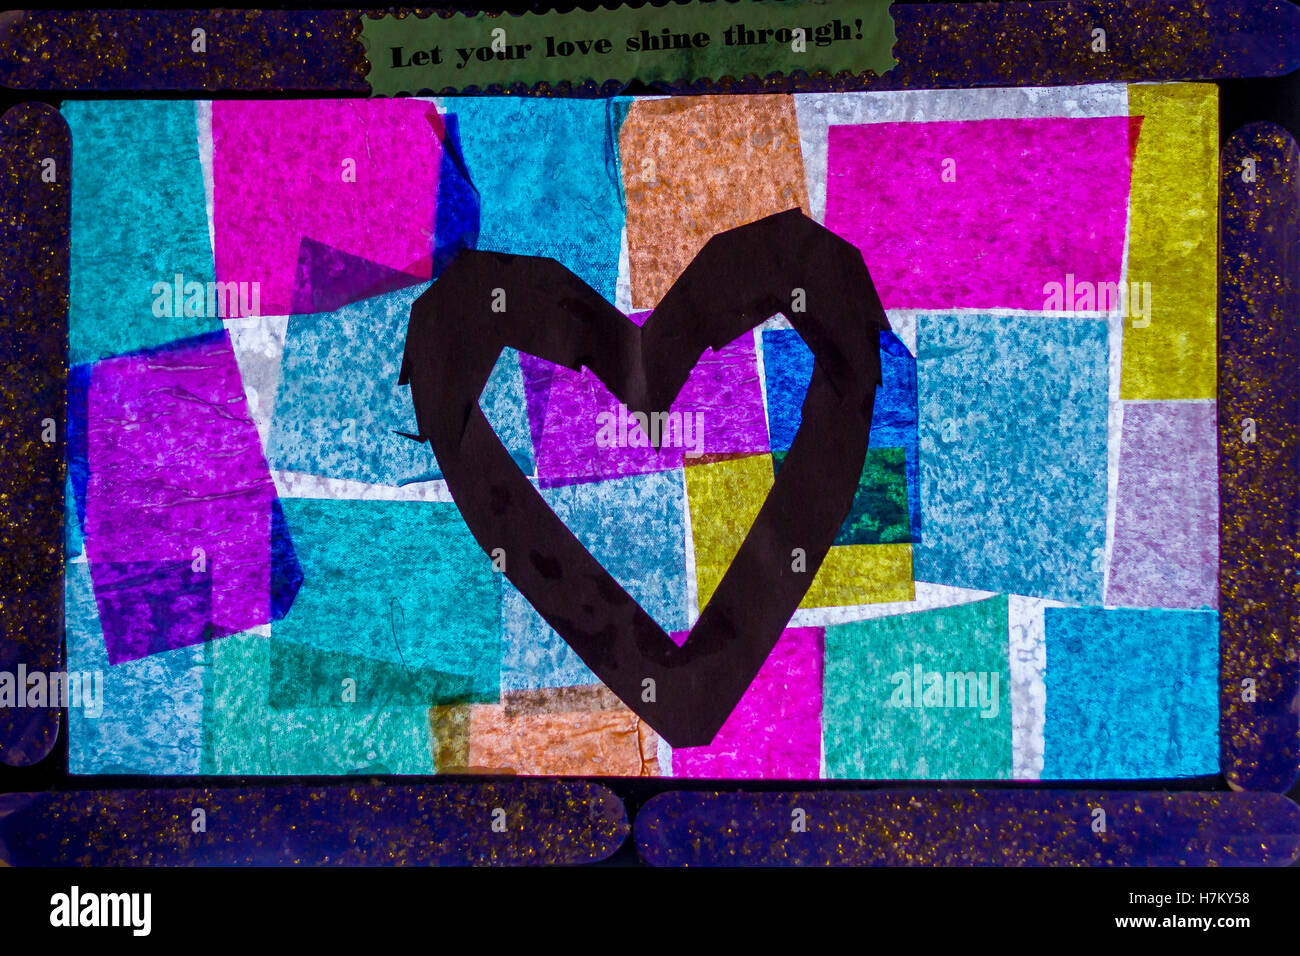 Astratta cornice con quadrati colorati e un grande cuore nero con parole sulla sommità lasciate che il vostro amore risplendere attraverso Foto Stock